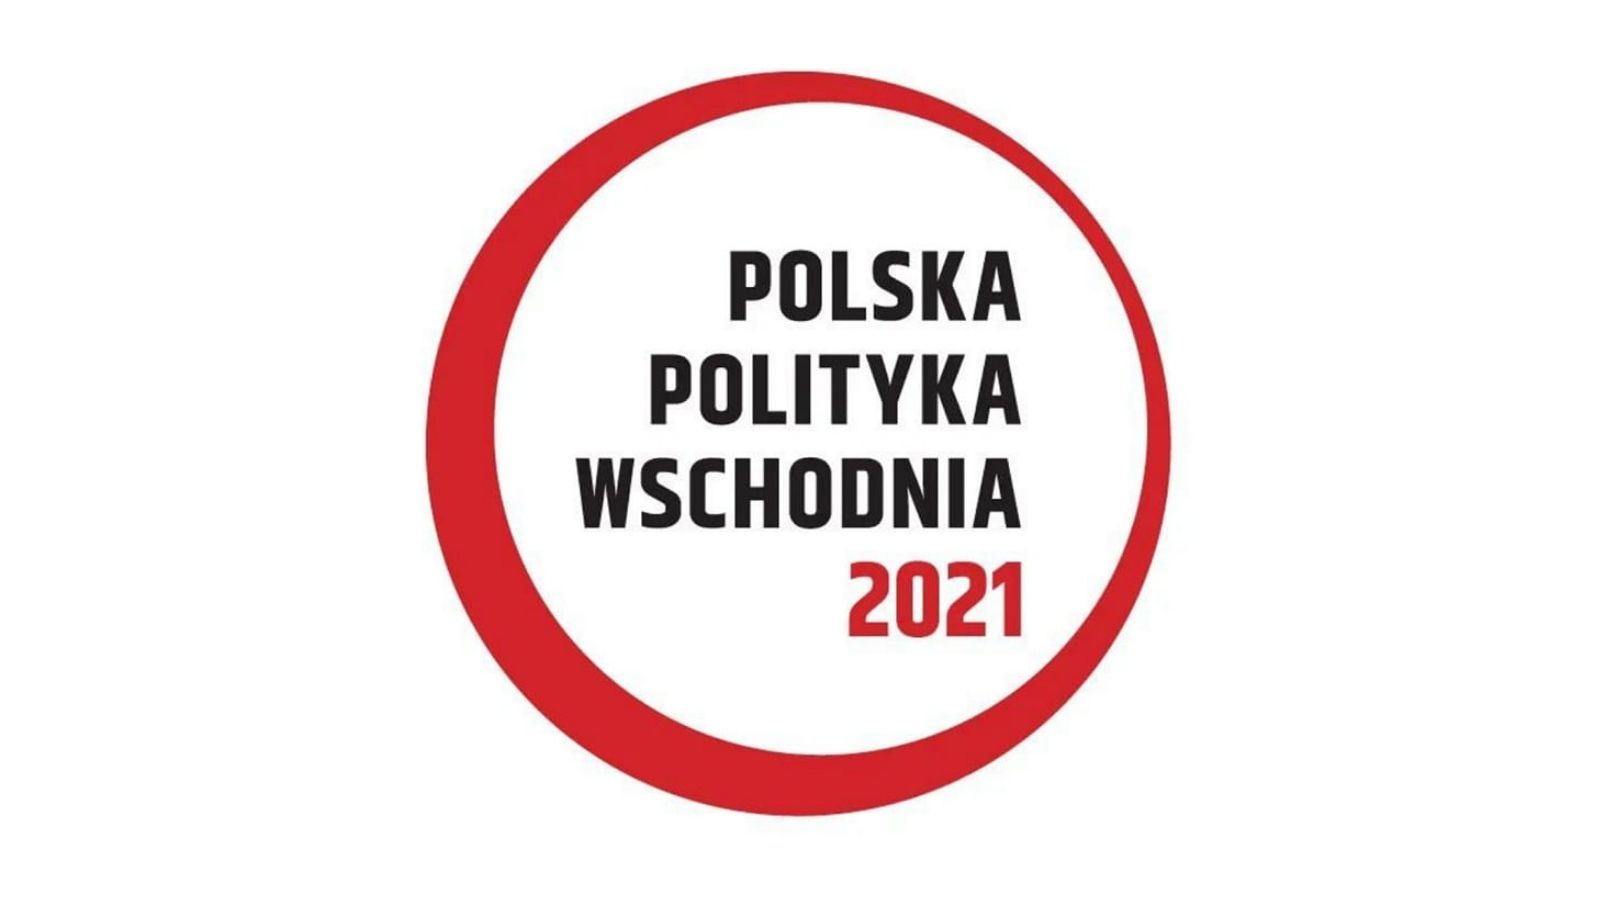 Konferencja Polska Polityka Wschodnia 2021